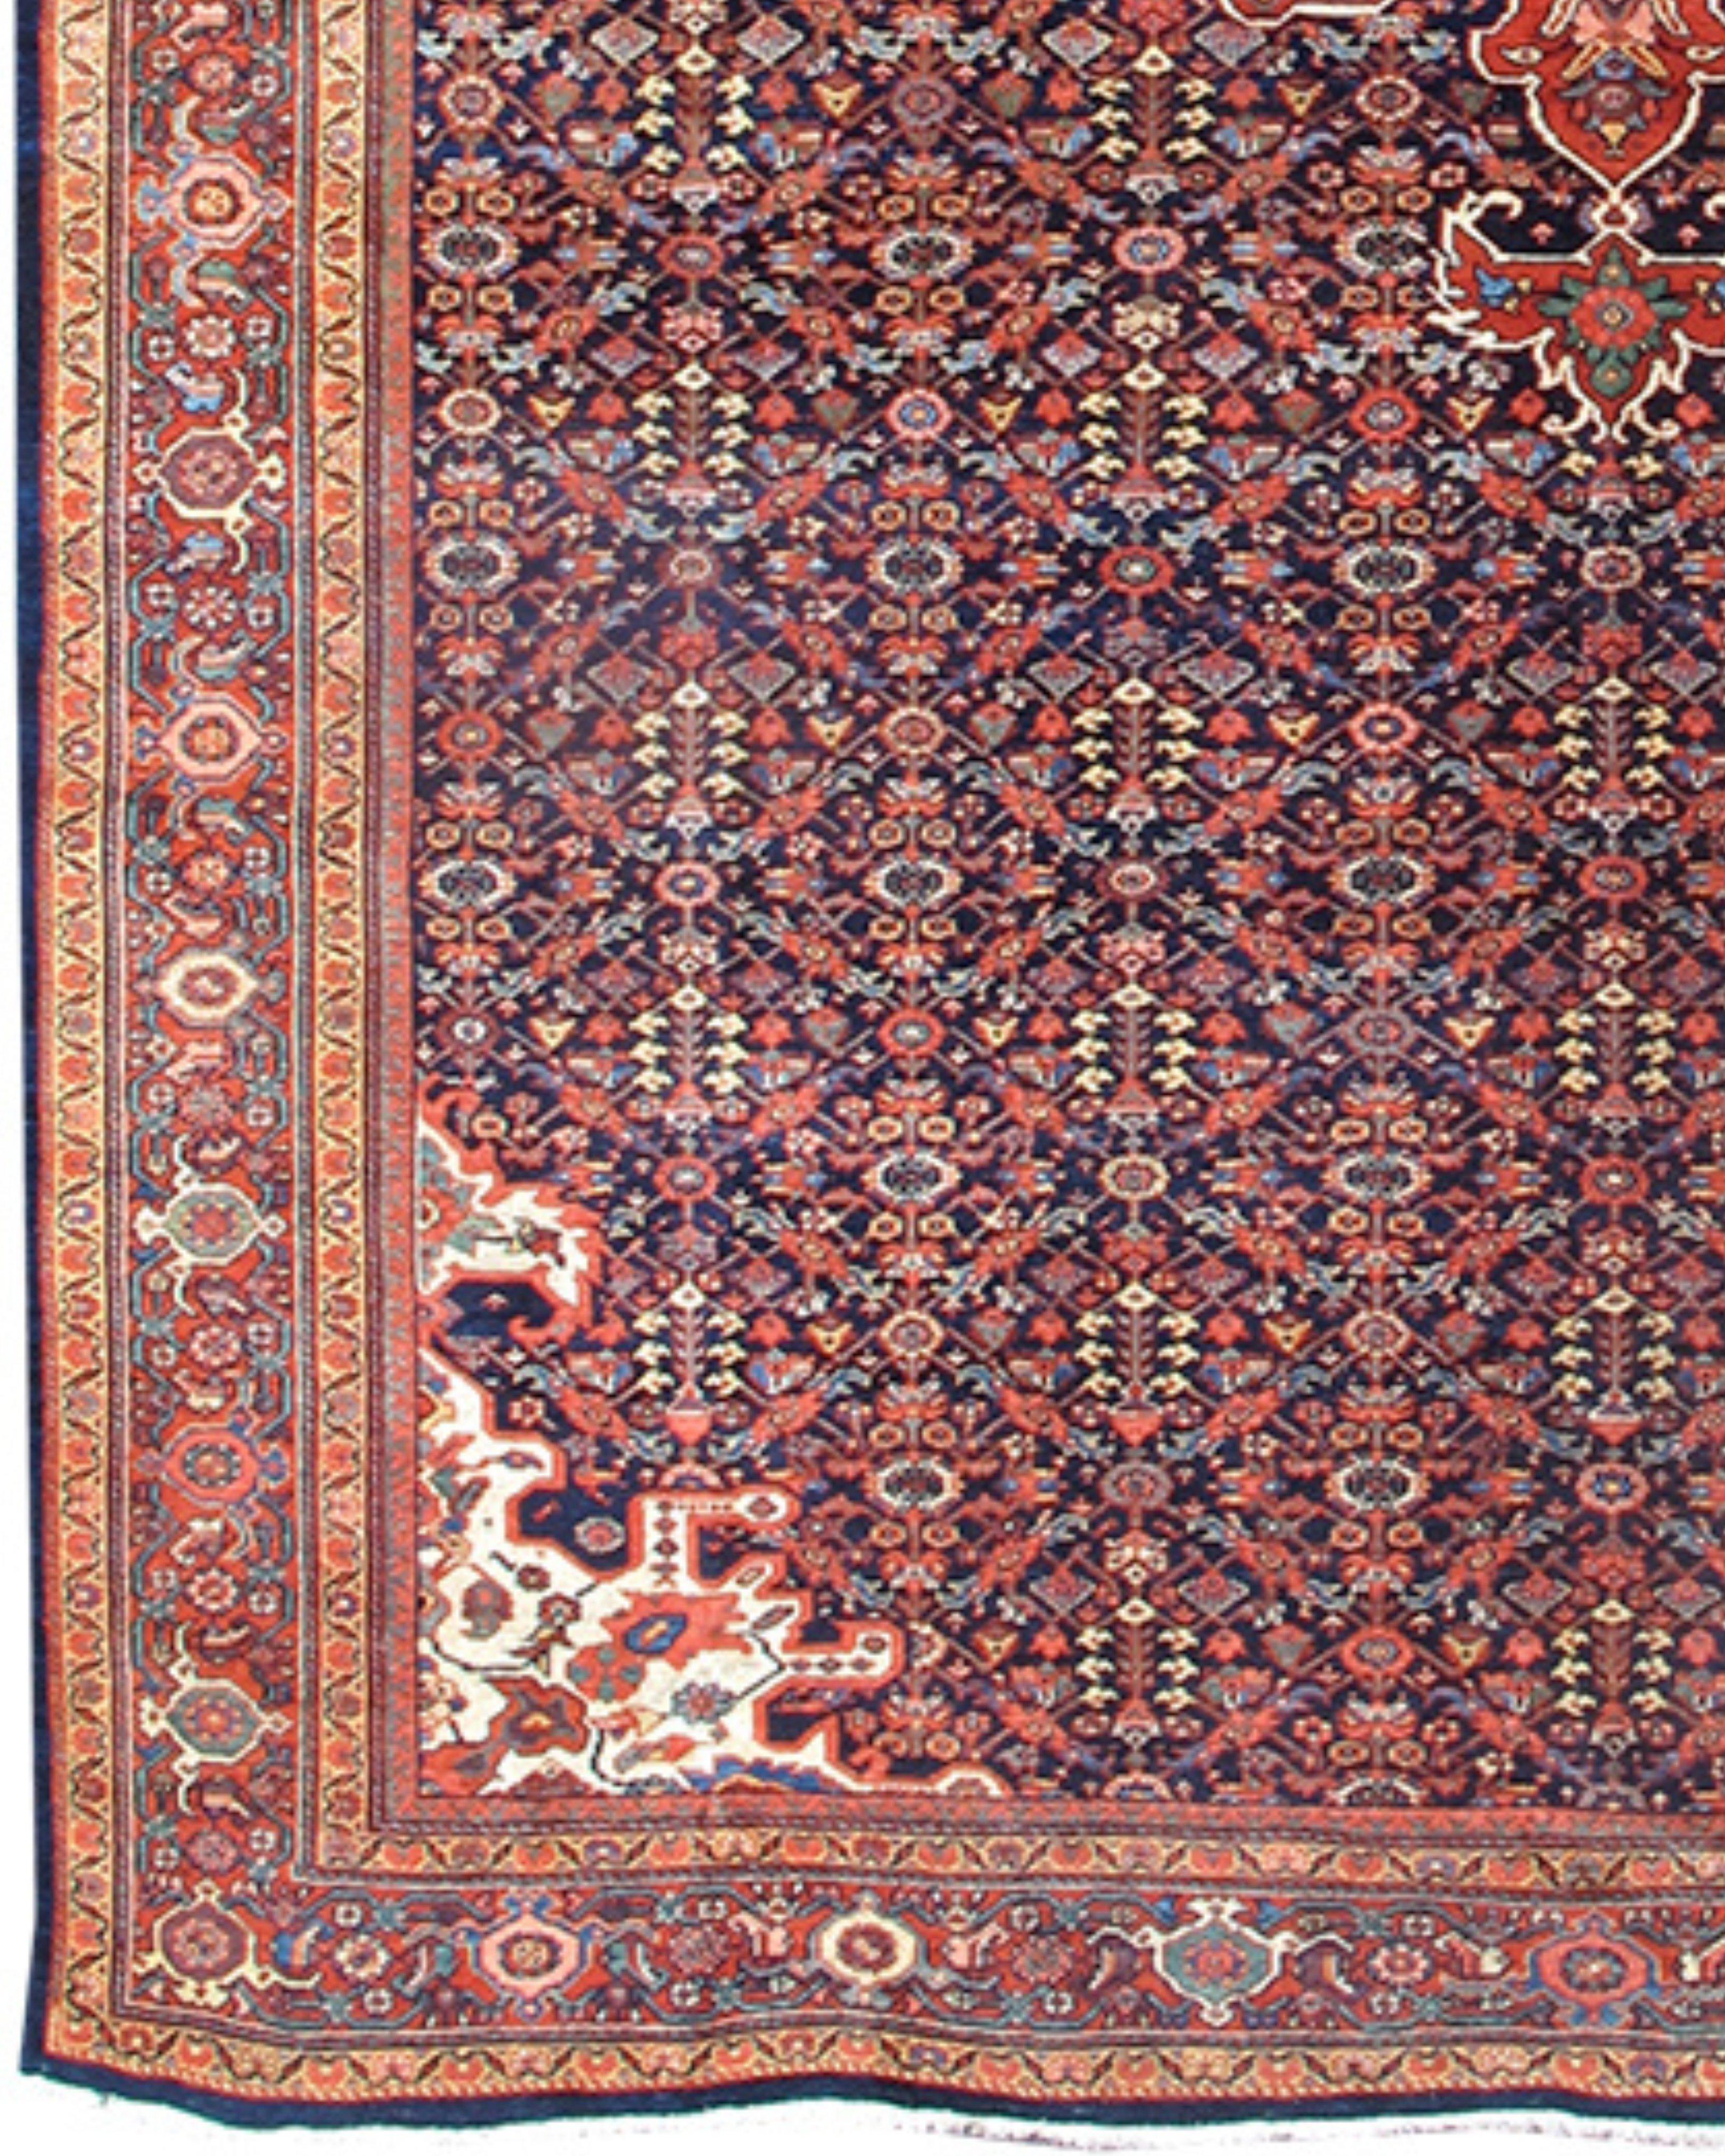 Ancien tapis persan Fereghan Sarouk, fin du 19e siècle

Médaillon central en forme de pendentif sur un champ bleu nuit à motif de gul Hannae dans une bordure de palmettes et de vignes garance.

Informations supplémentaires :
Dimensions : 6'11